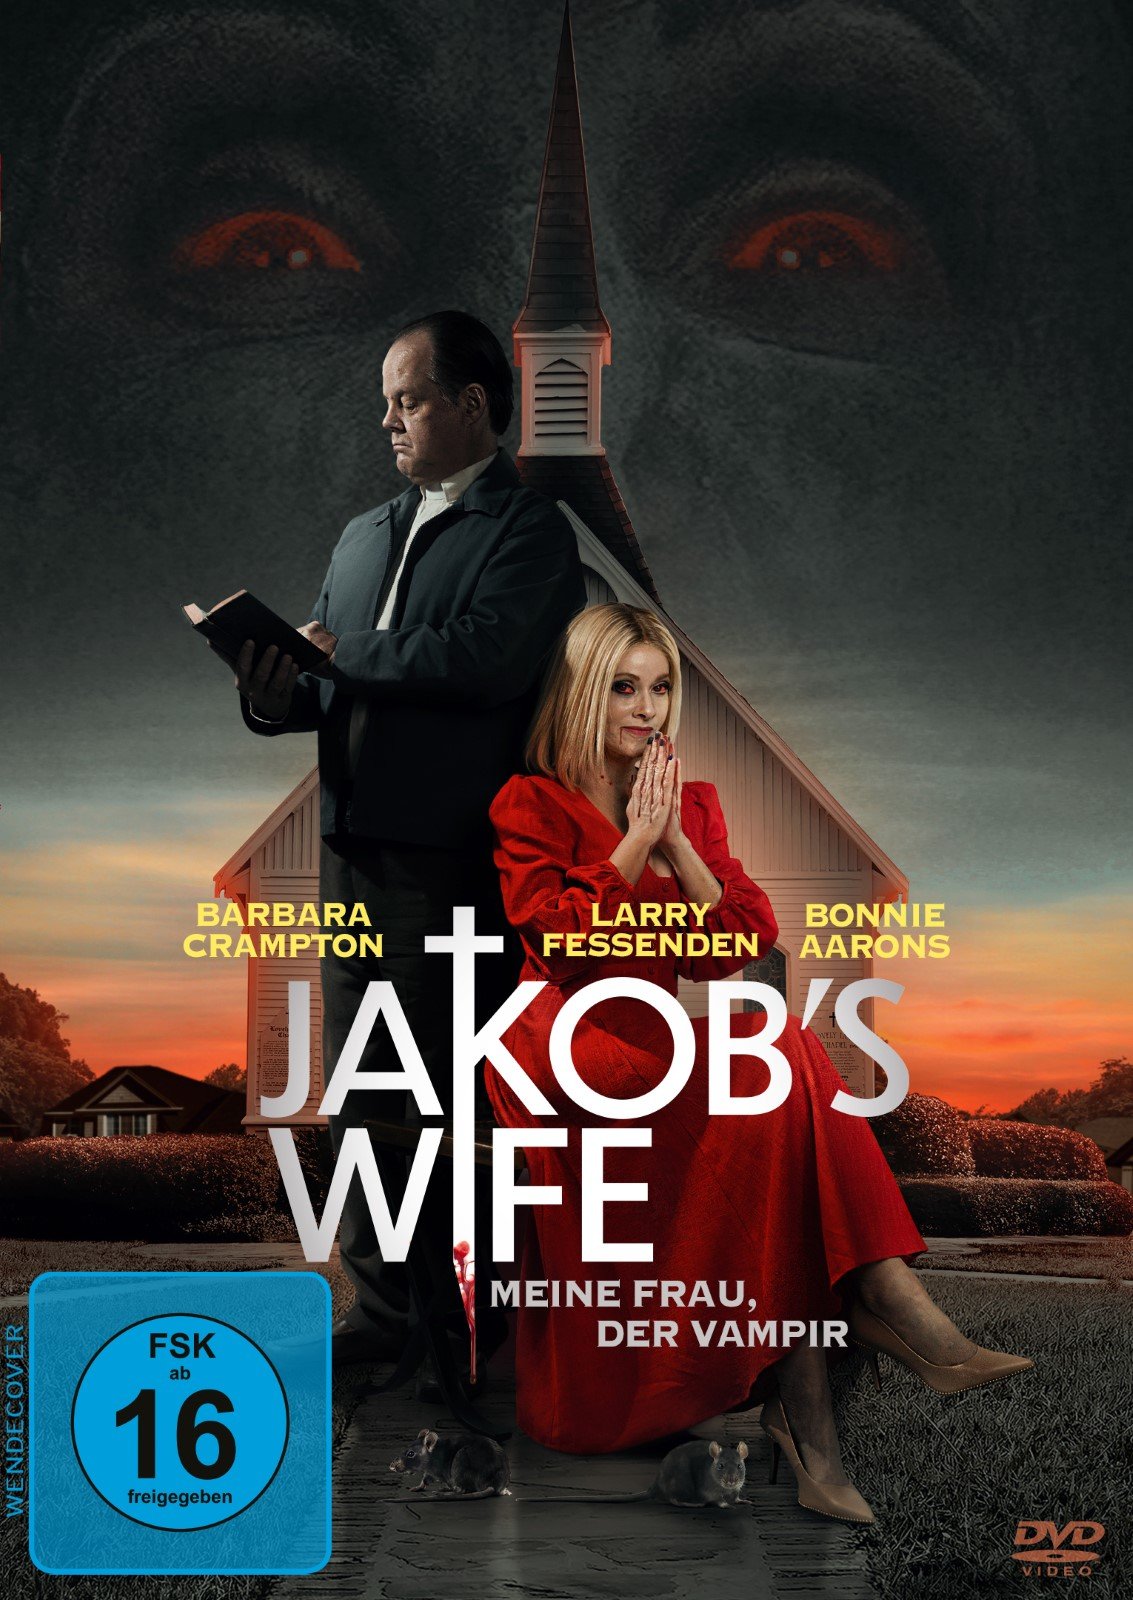 Jakob's Wife - Meine Frau, der Vampir - Film 2021 - FILMSTARTS.de